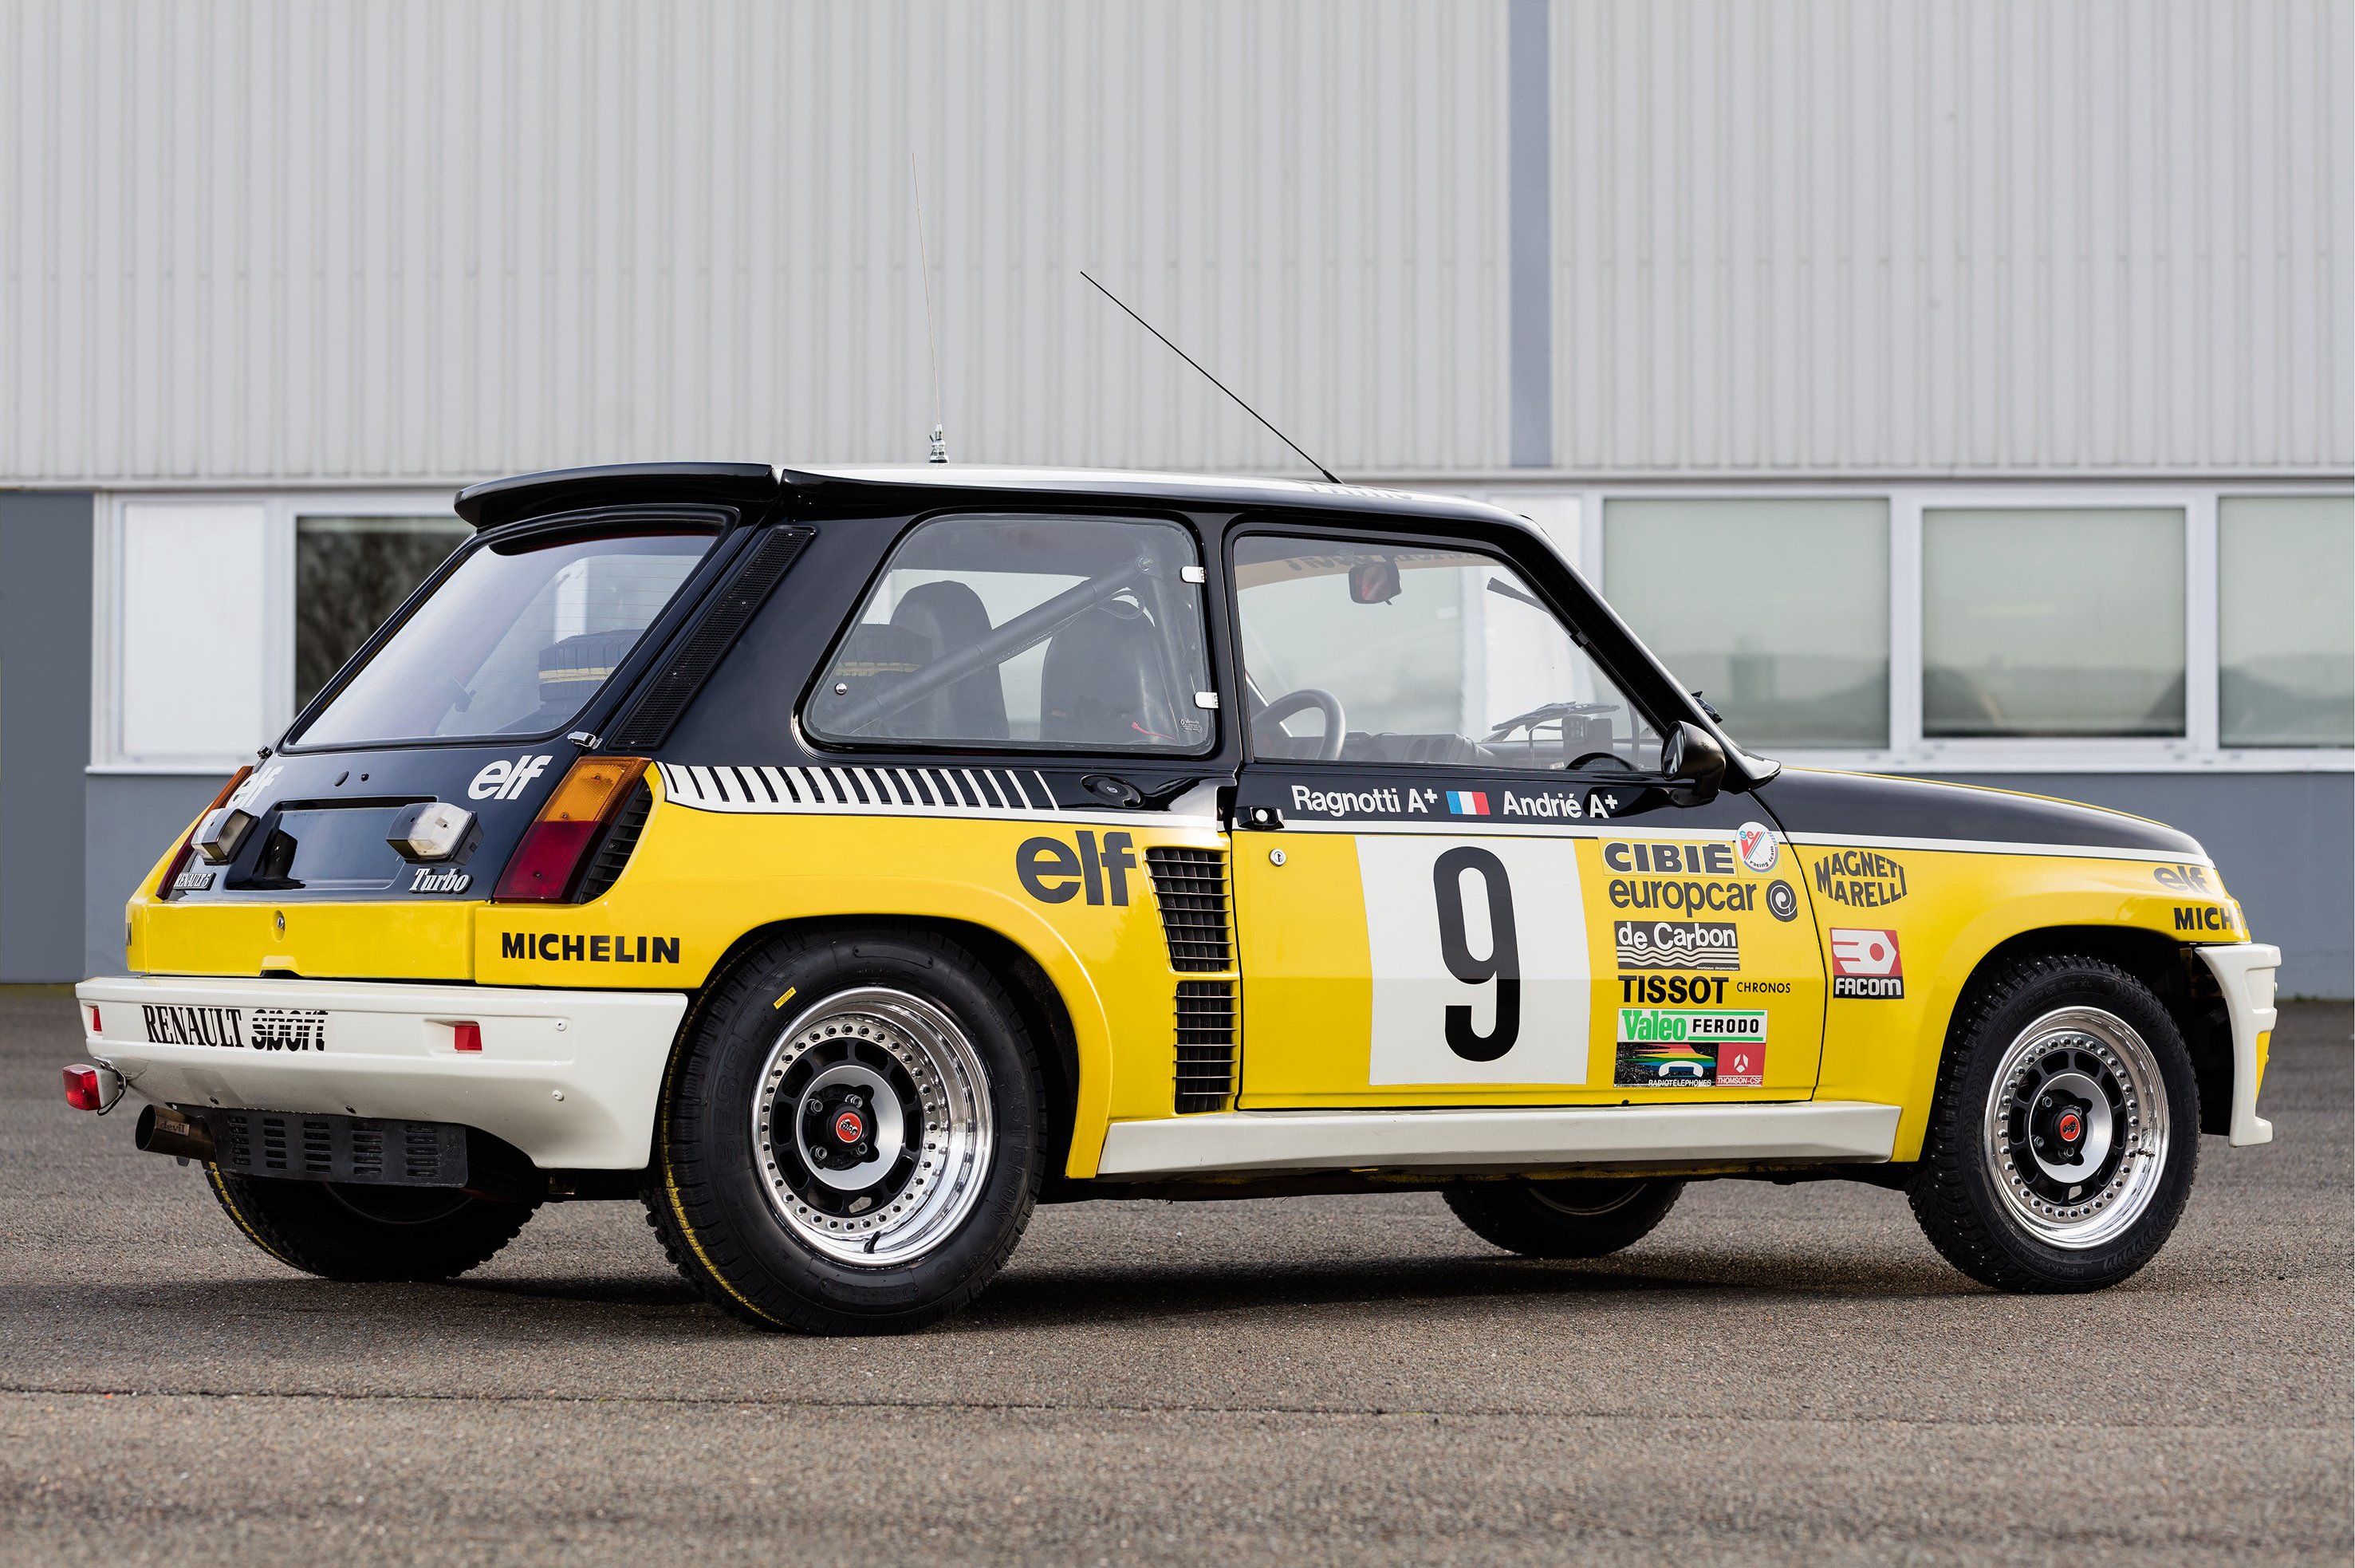 1980 82, Renault, R5, Turbo, Group 4, Wrc, Rally, Race, Racing Wallpaper